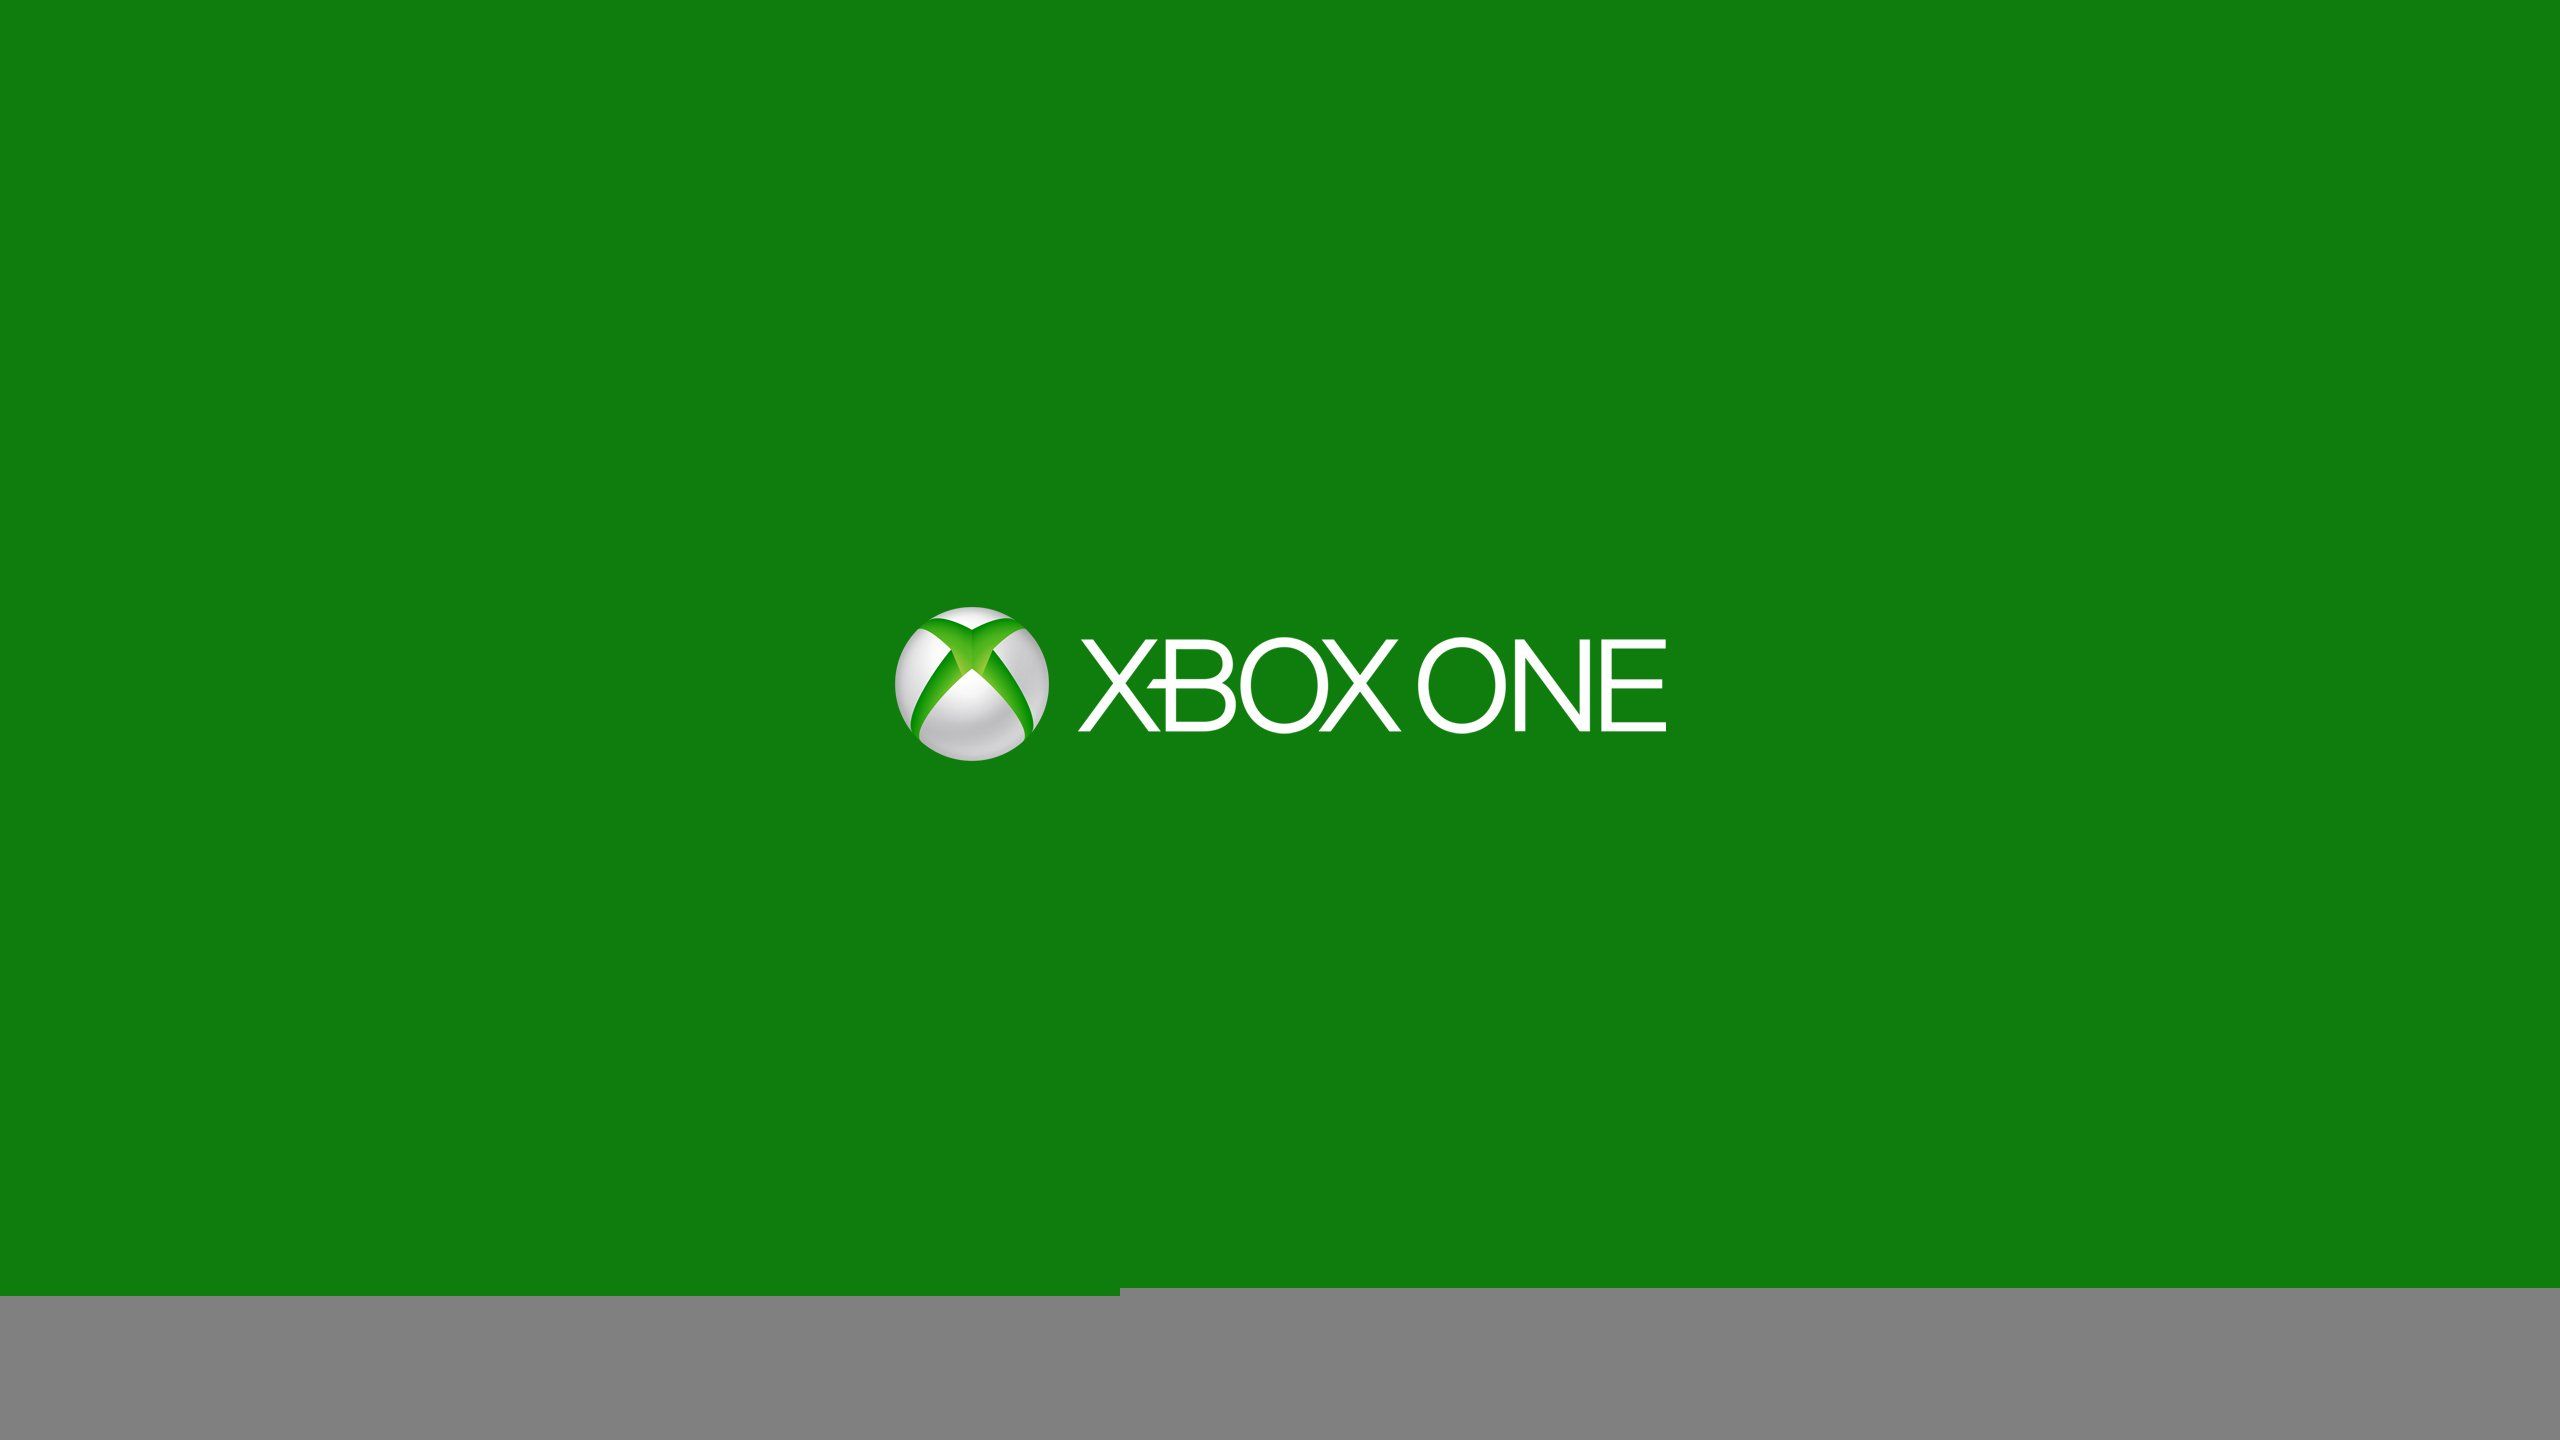 Green Xbox Wallpapers: Tạo cho mình một không gian đầy màu sắc với những hình nền Xbox đầy sáng tạo, đặc biệt là những màu xanh lá cây tươi trẻ. Với những hình nền này, bạn sẽ có được một không gian sống động và đầy năng lượng. Hãy truy cập ngay bây giờ để tải về!